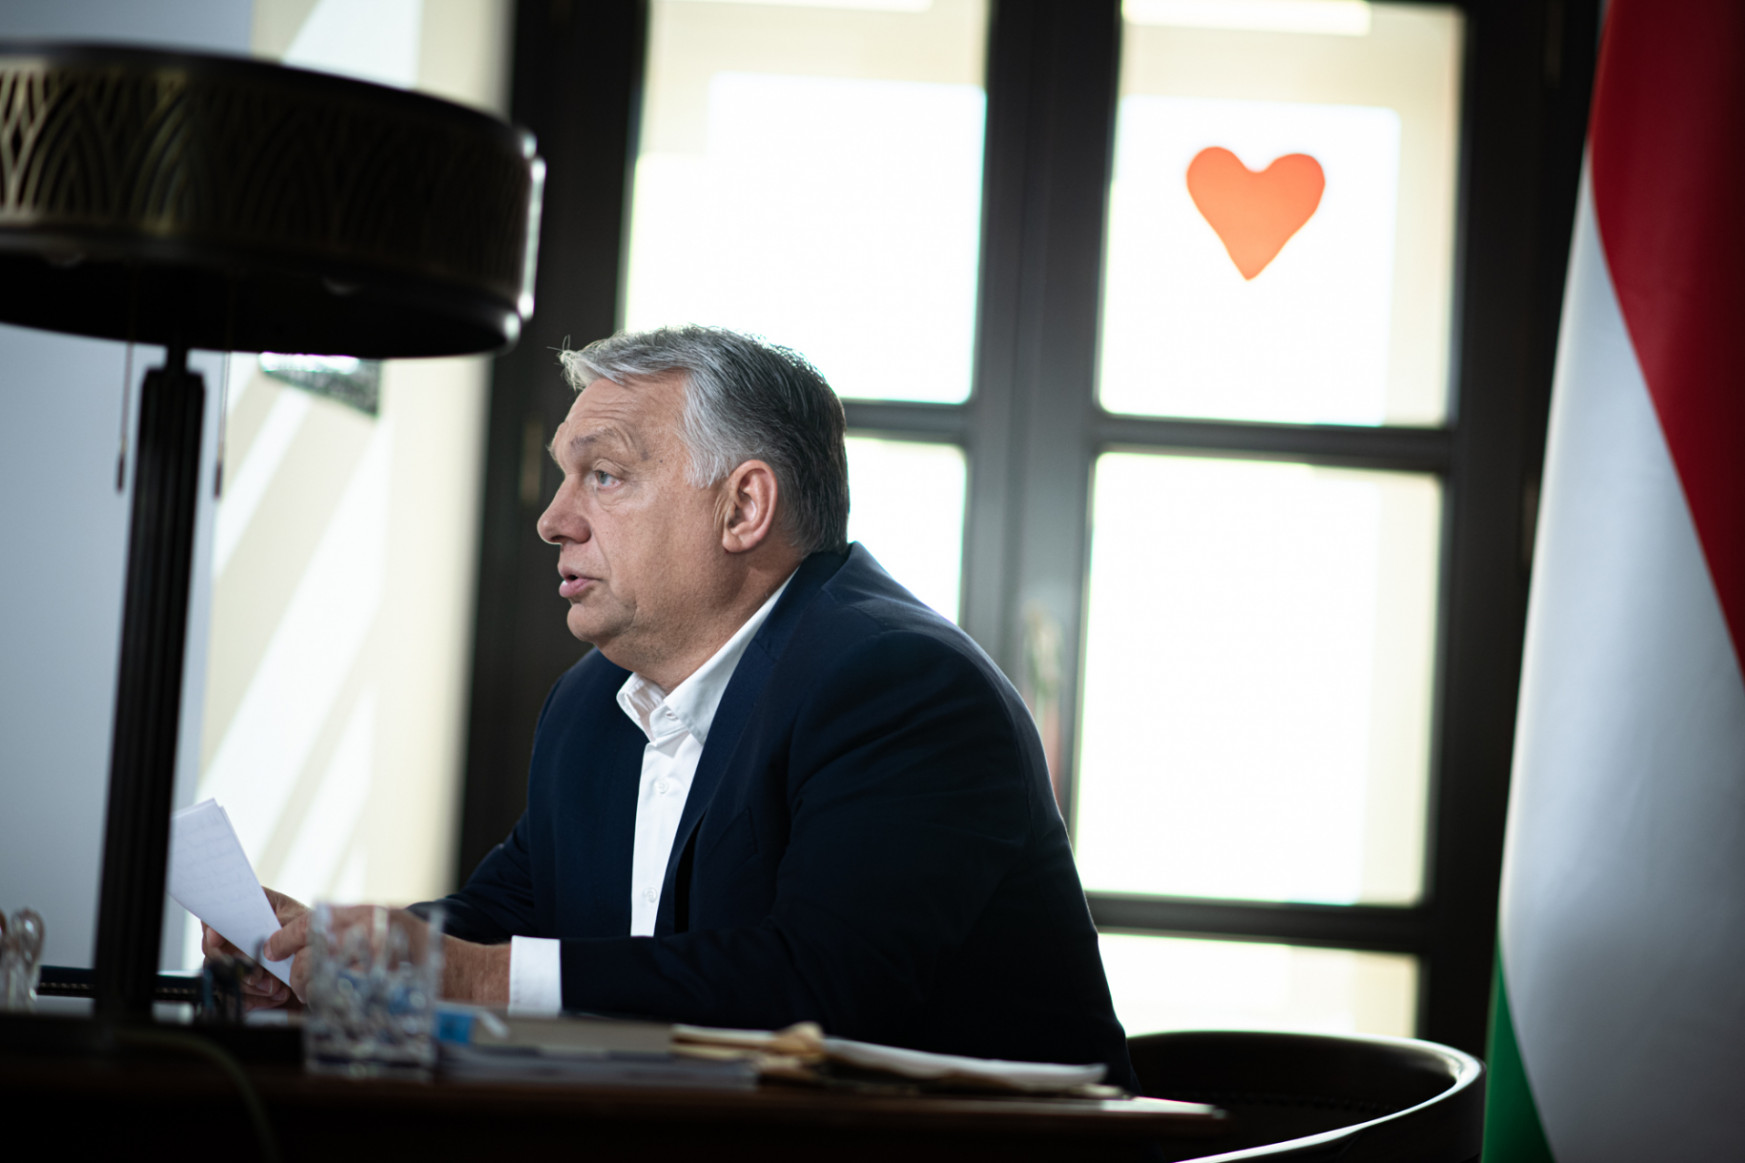 Megpróbáltuk megfejteni, mi az értelme az Orbán által bejelentett gyereknépszavazás kérdéseinek